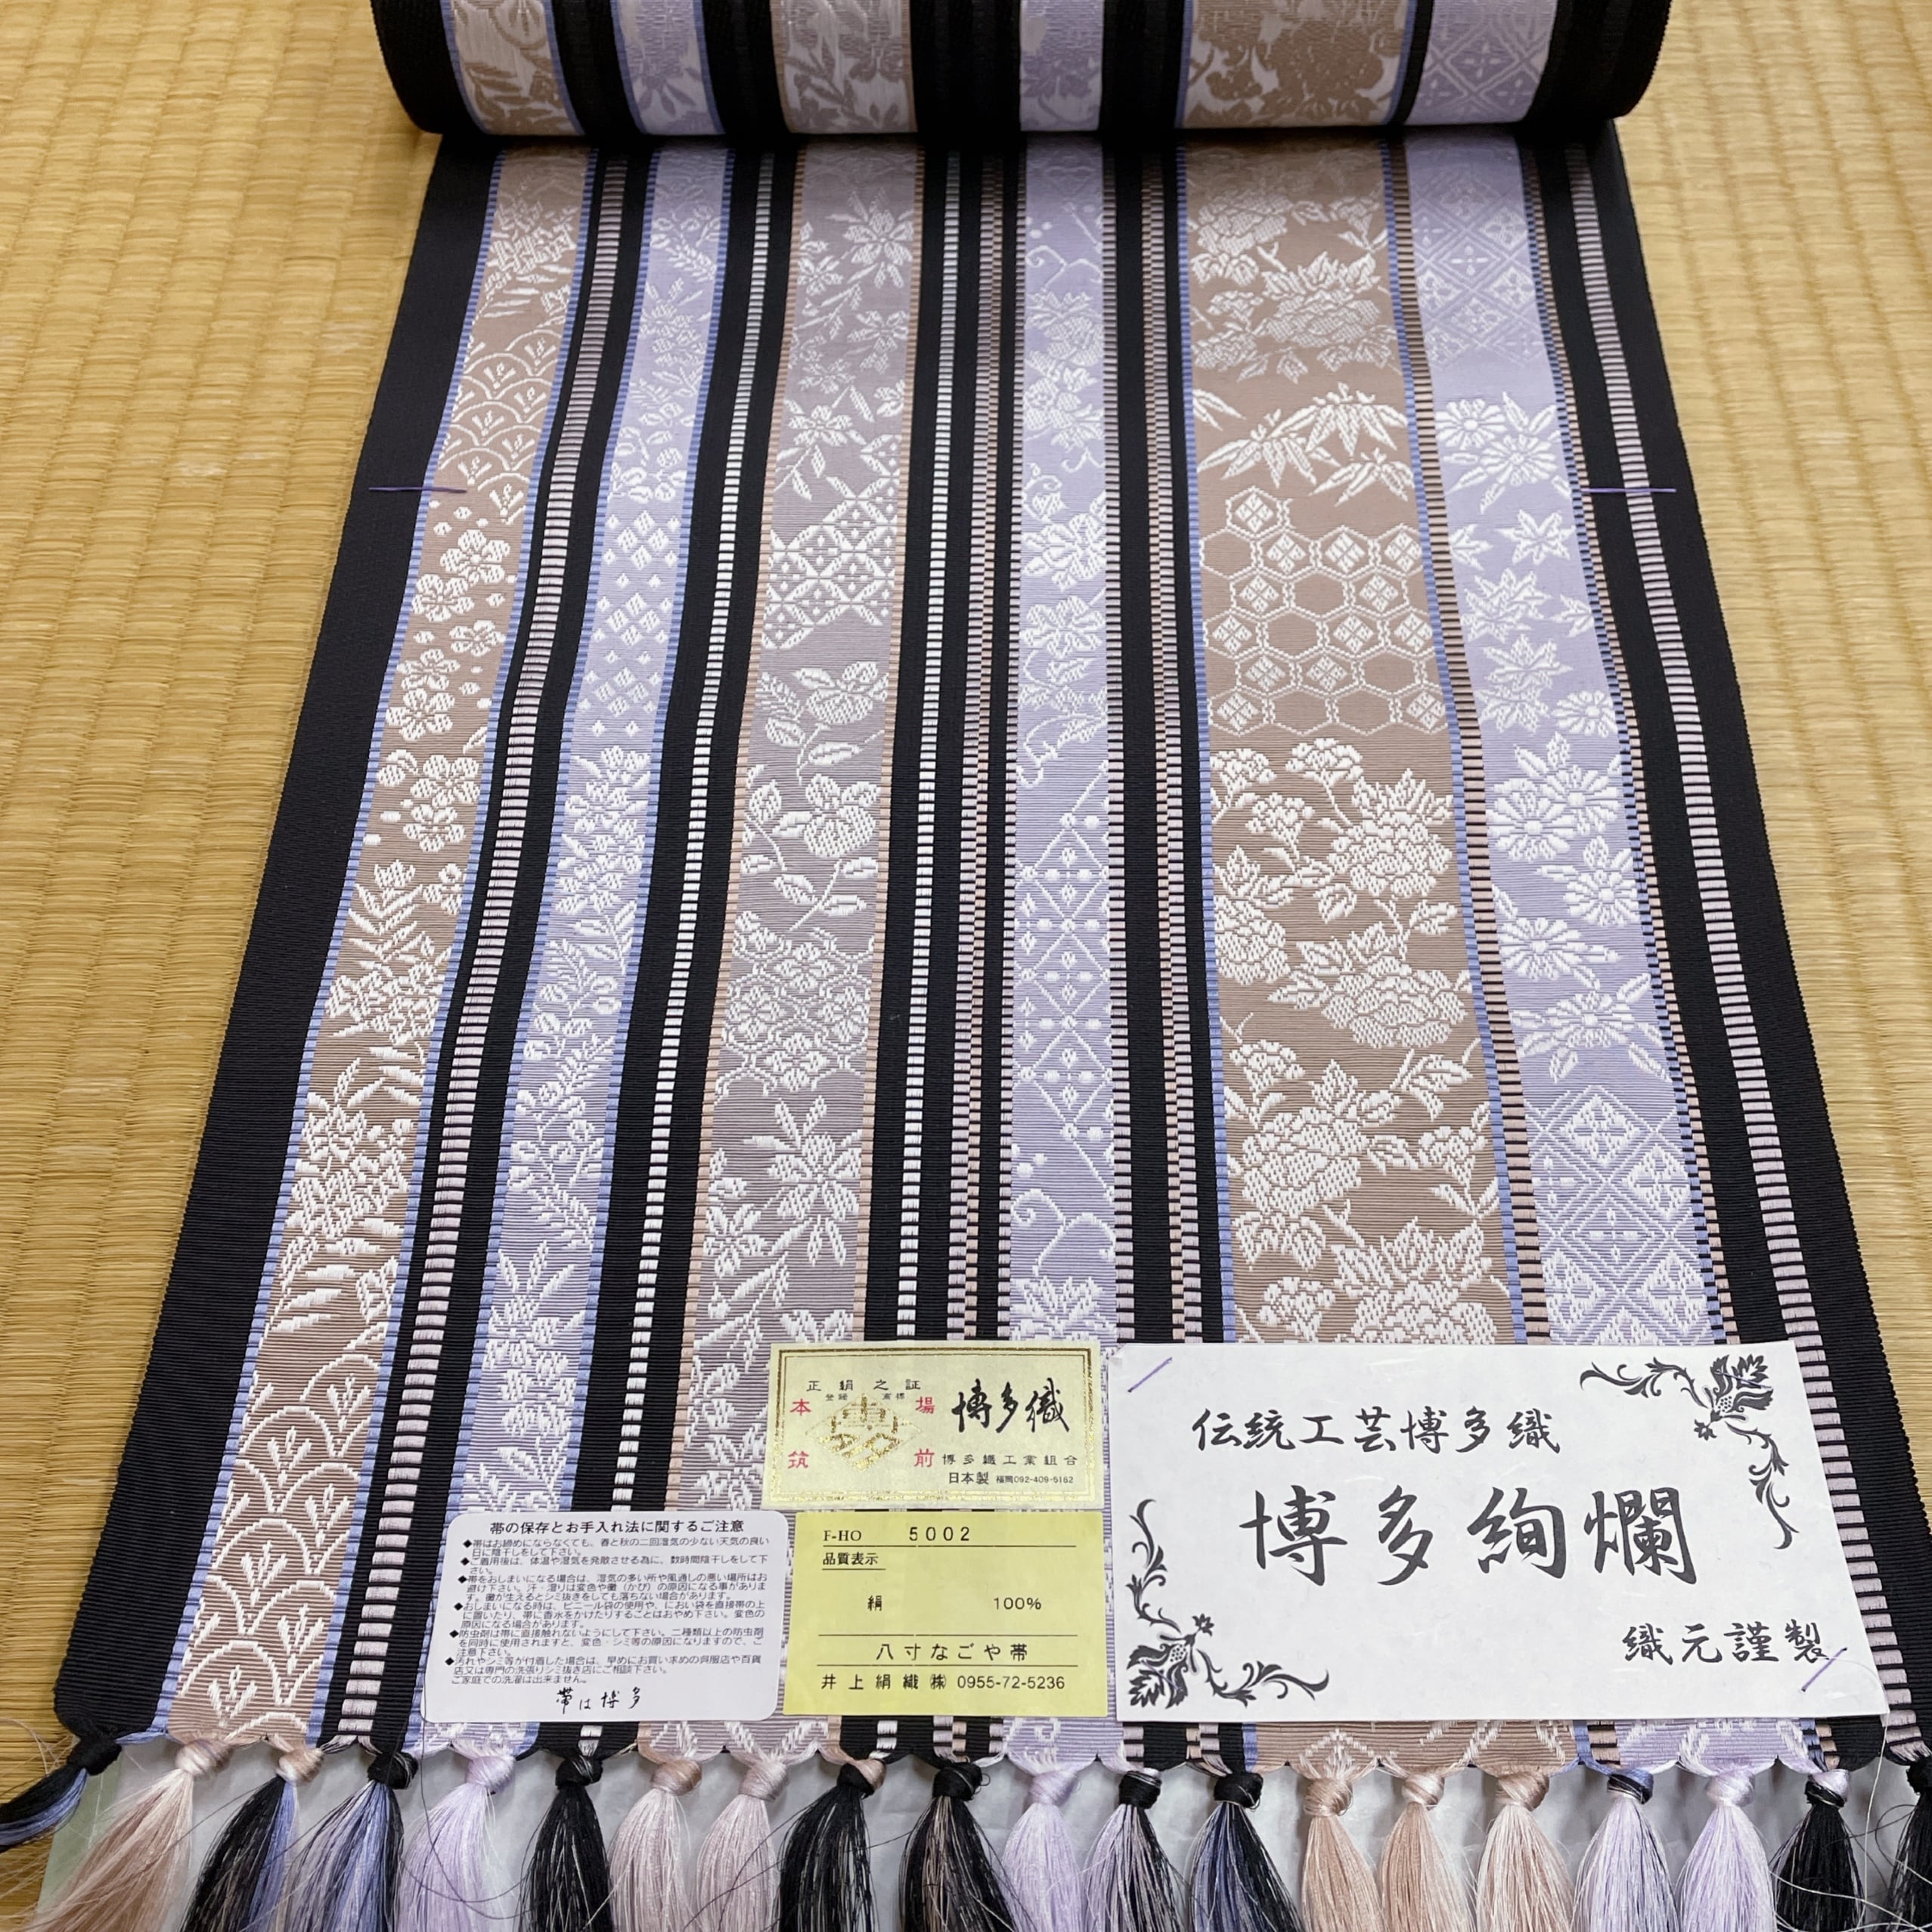 京やI410 正絹 通産大臣指定伝統的工芸品 博多織工業組合 夏の名古屋帯